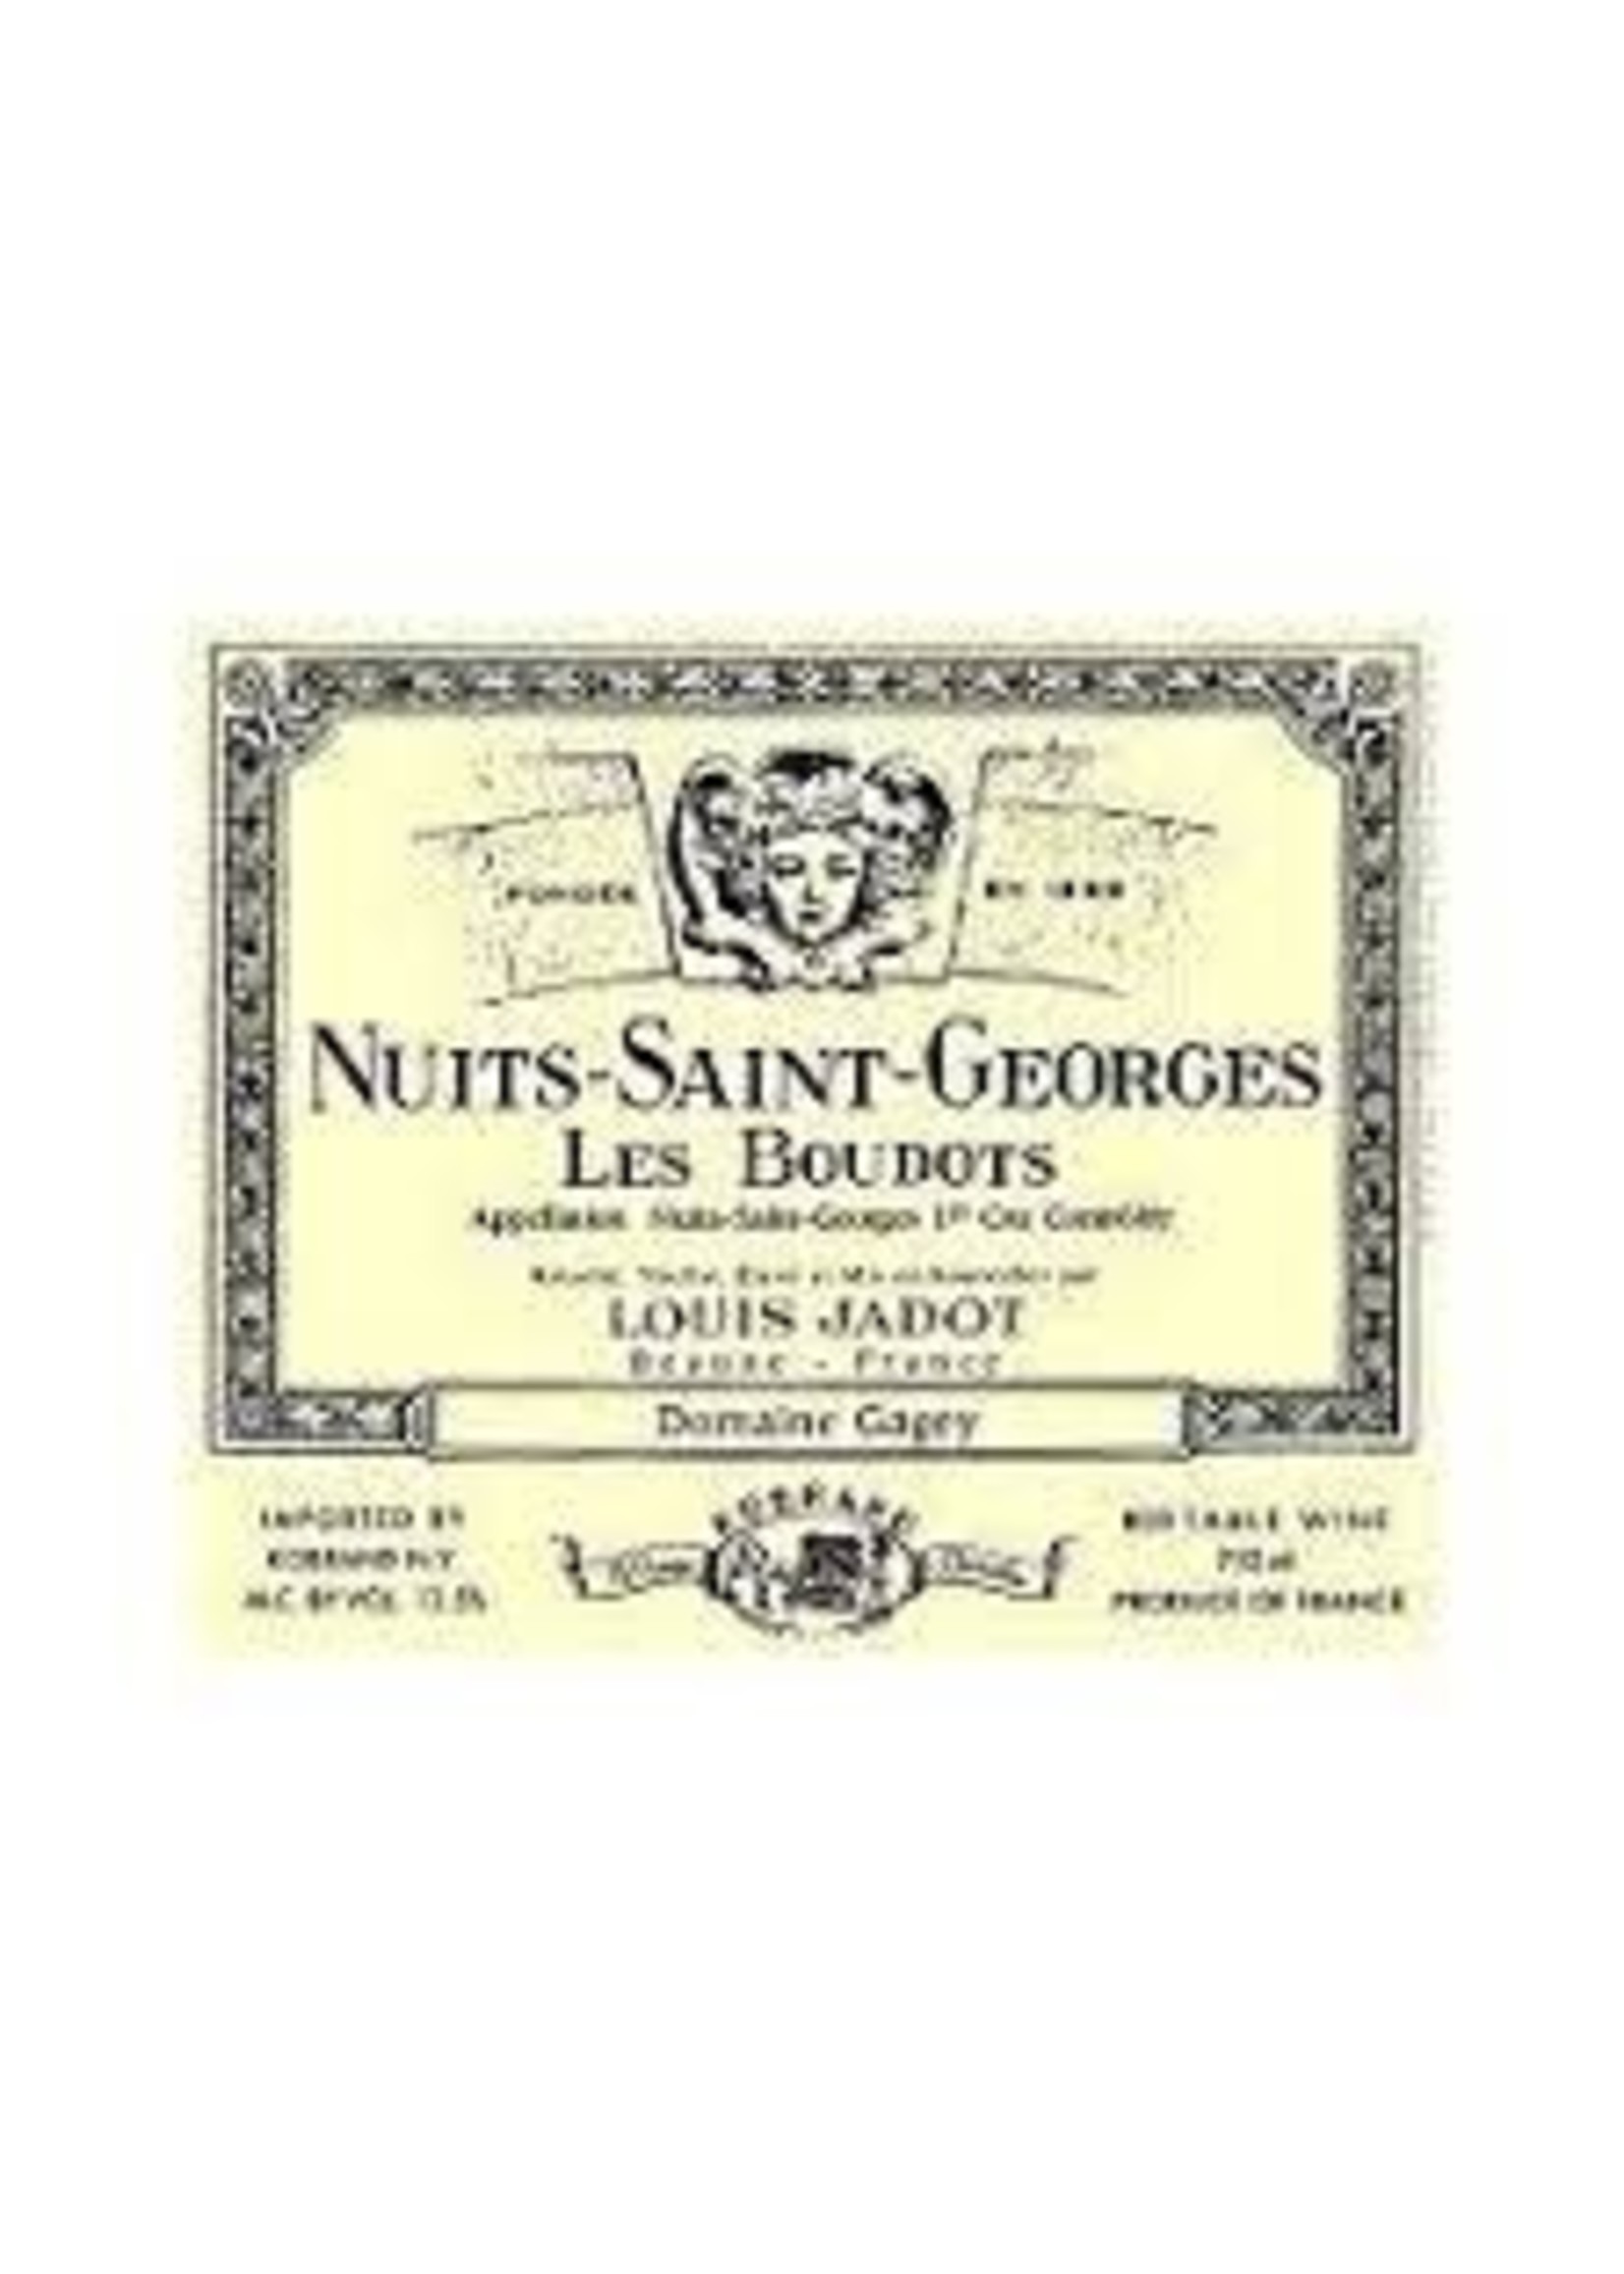 Louis Jadot 2019 Nuits-St.-Georges 1er Cru Les Boudots 750ml